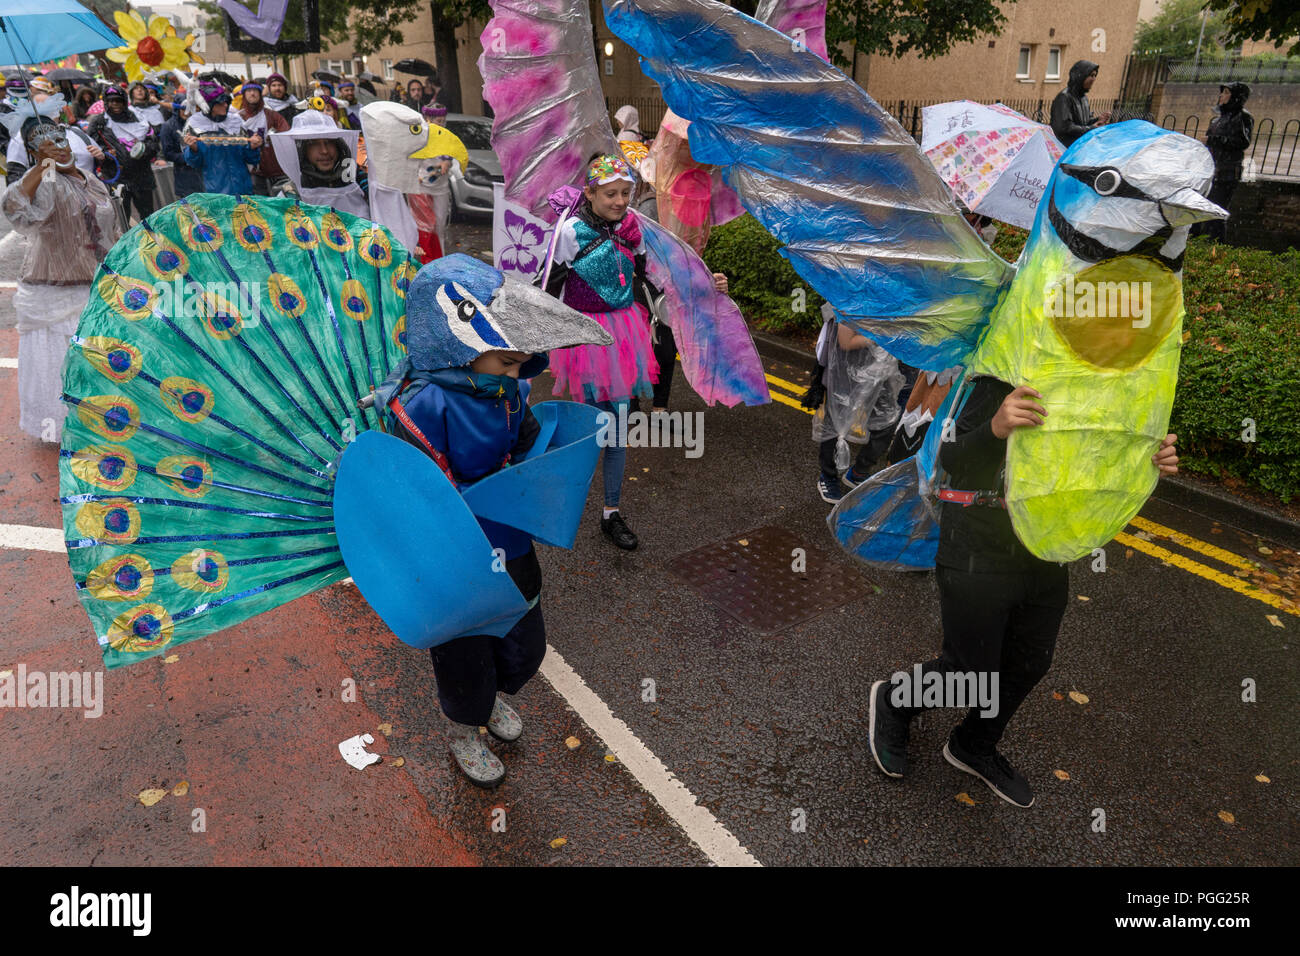 Cardiff, Pays de Galles, le 26 août 2018 : les communautés locales participent à l'Annua lButetown 2018 défilé de carnaval dans la baie de Cardiff, Pays de Galles le 25 août 2018. Crédit : Daniel Damaschin/Alamy Live News Banque D'Images